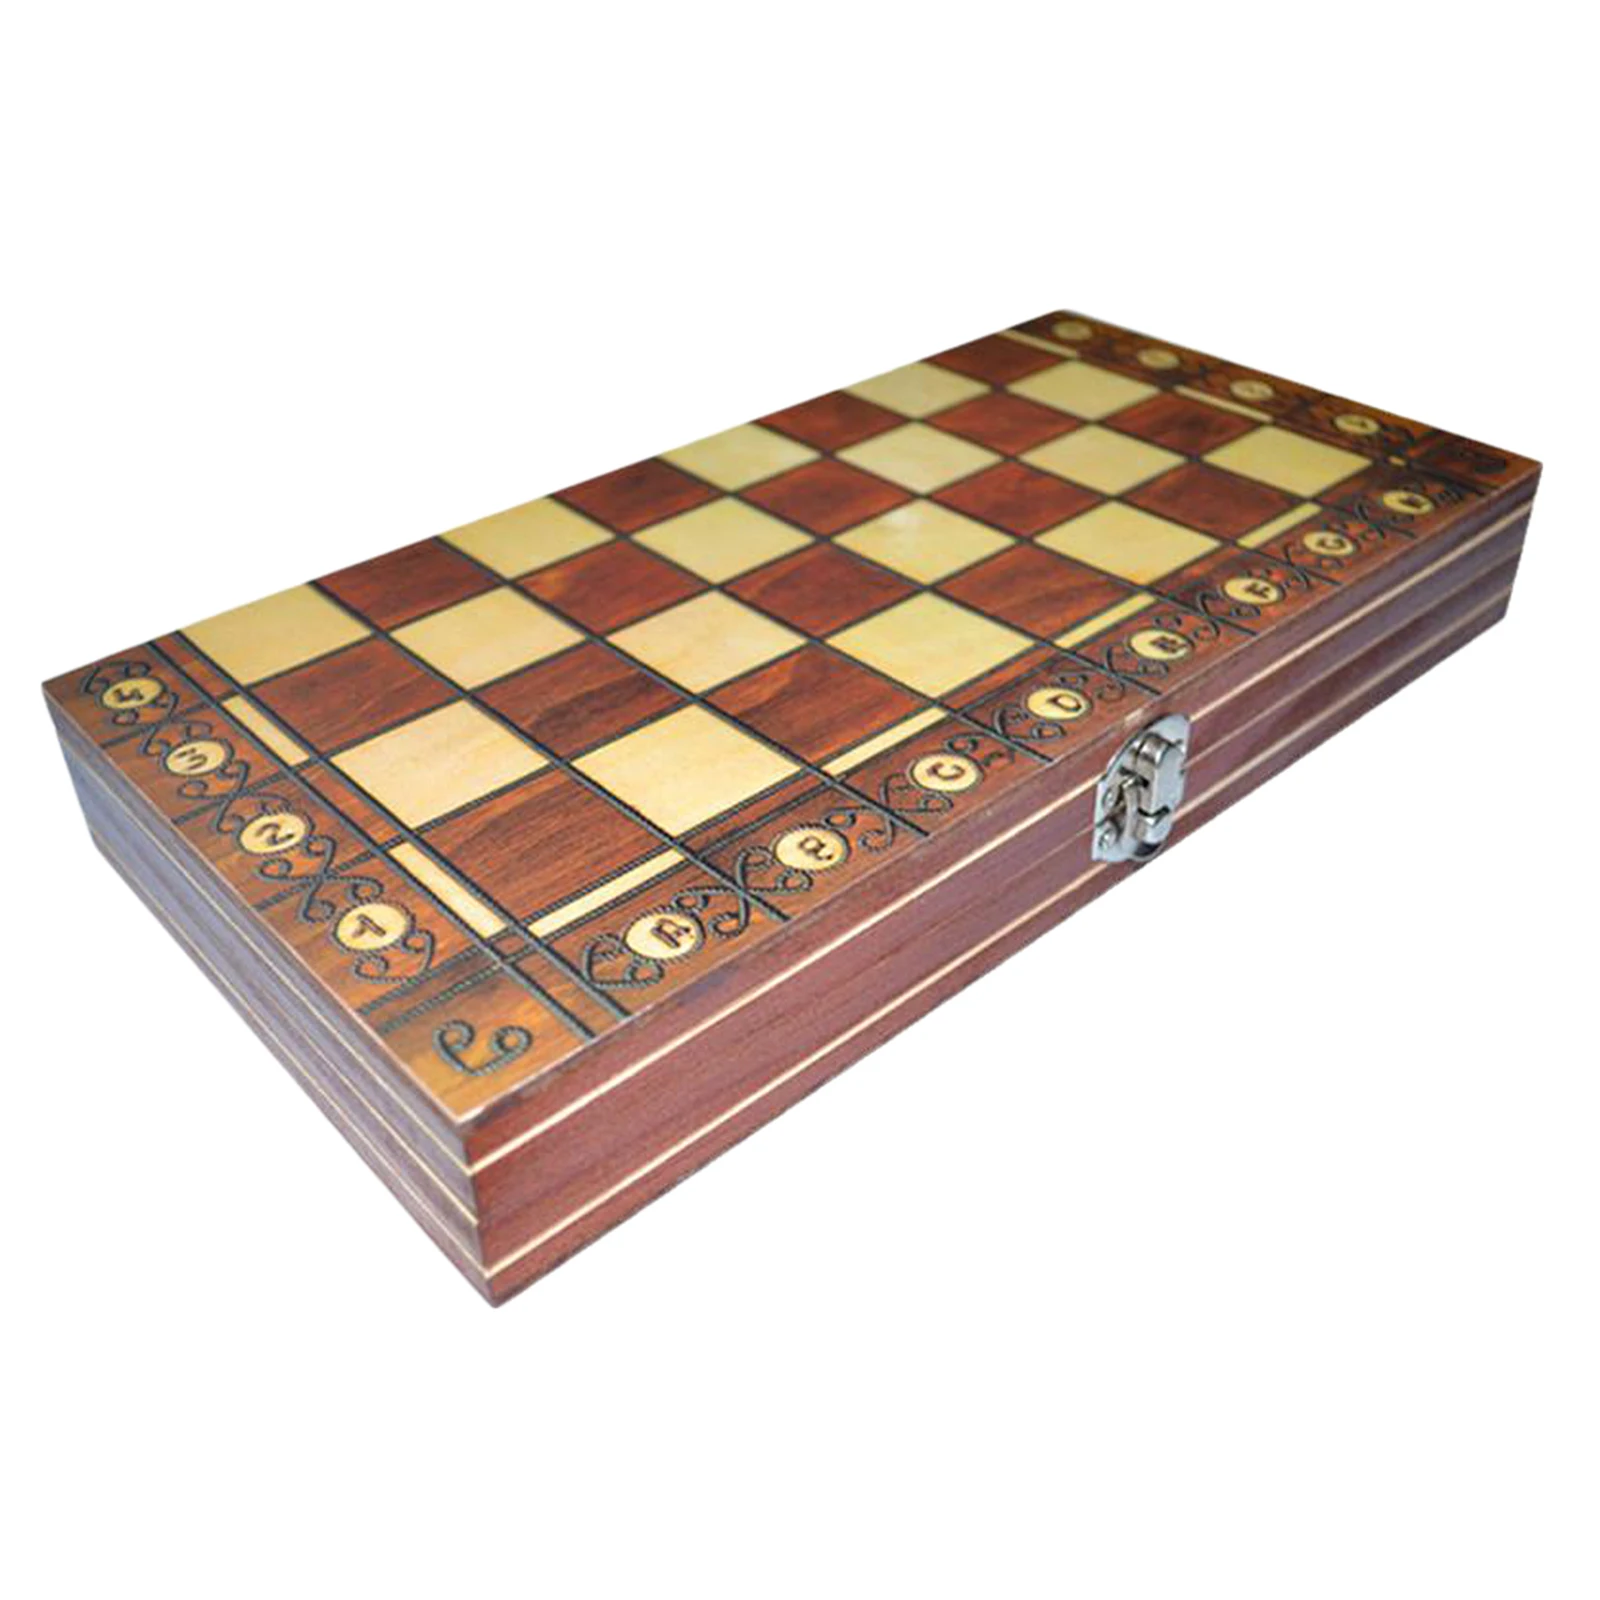 39x39cm Brettspiel klappbar Magnetische Schach Holz Kit Backgammon Checkers 